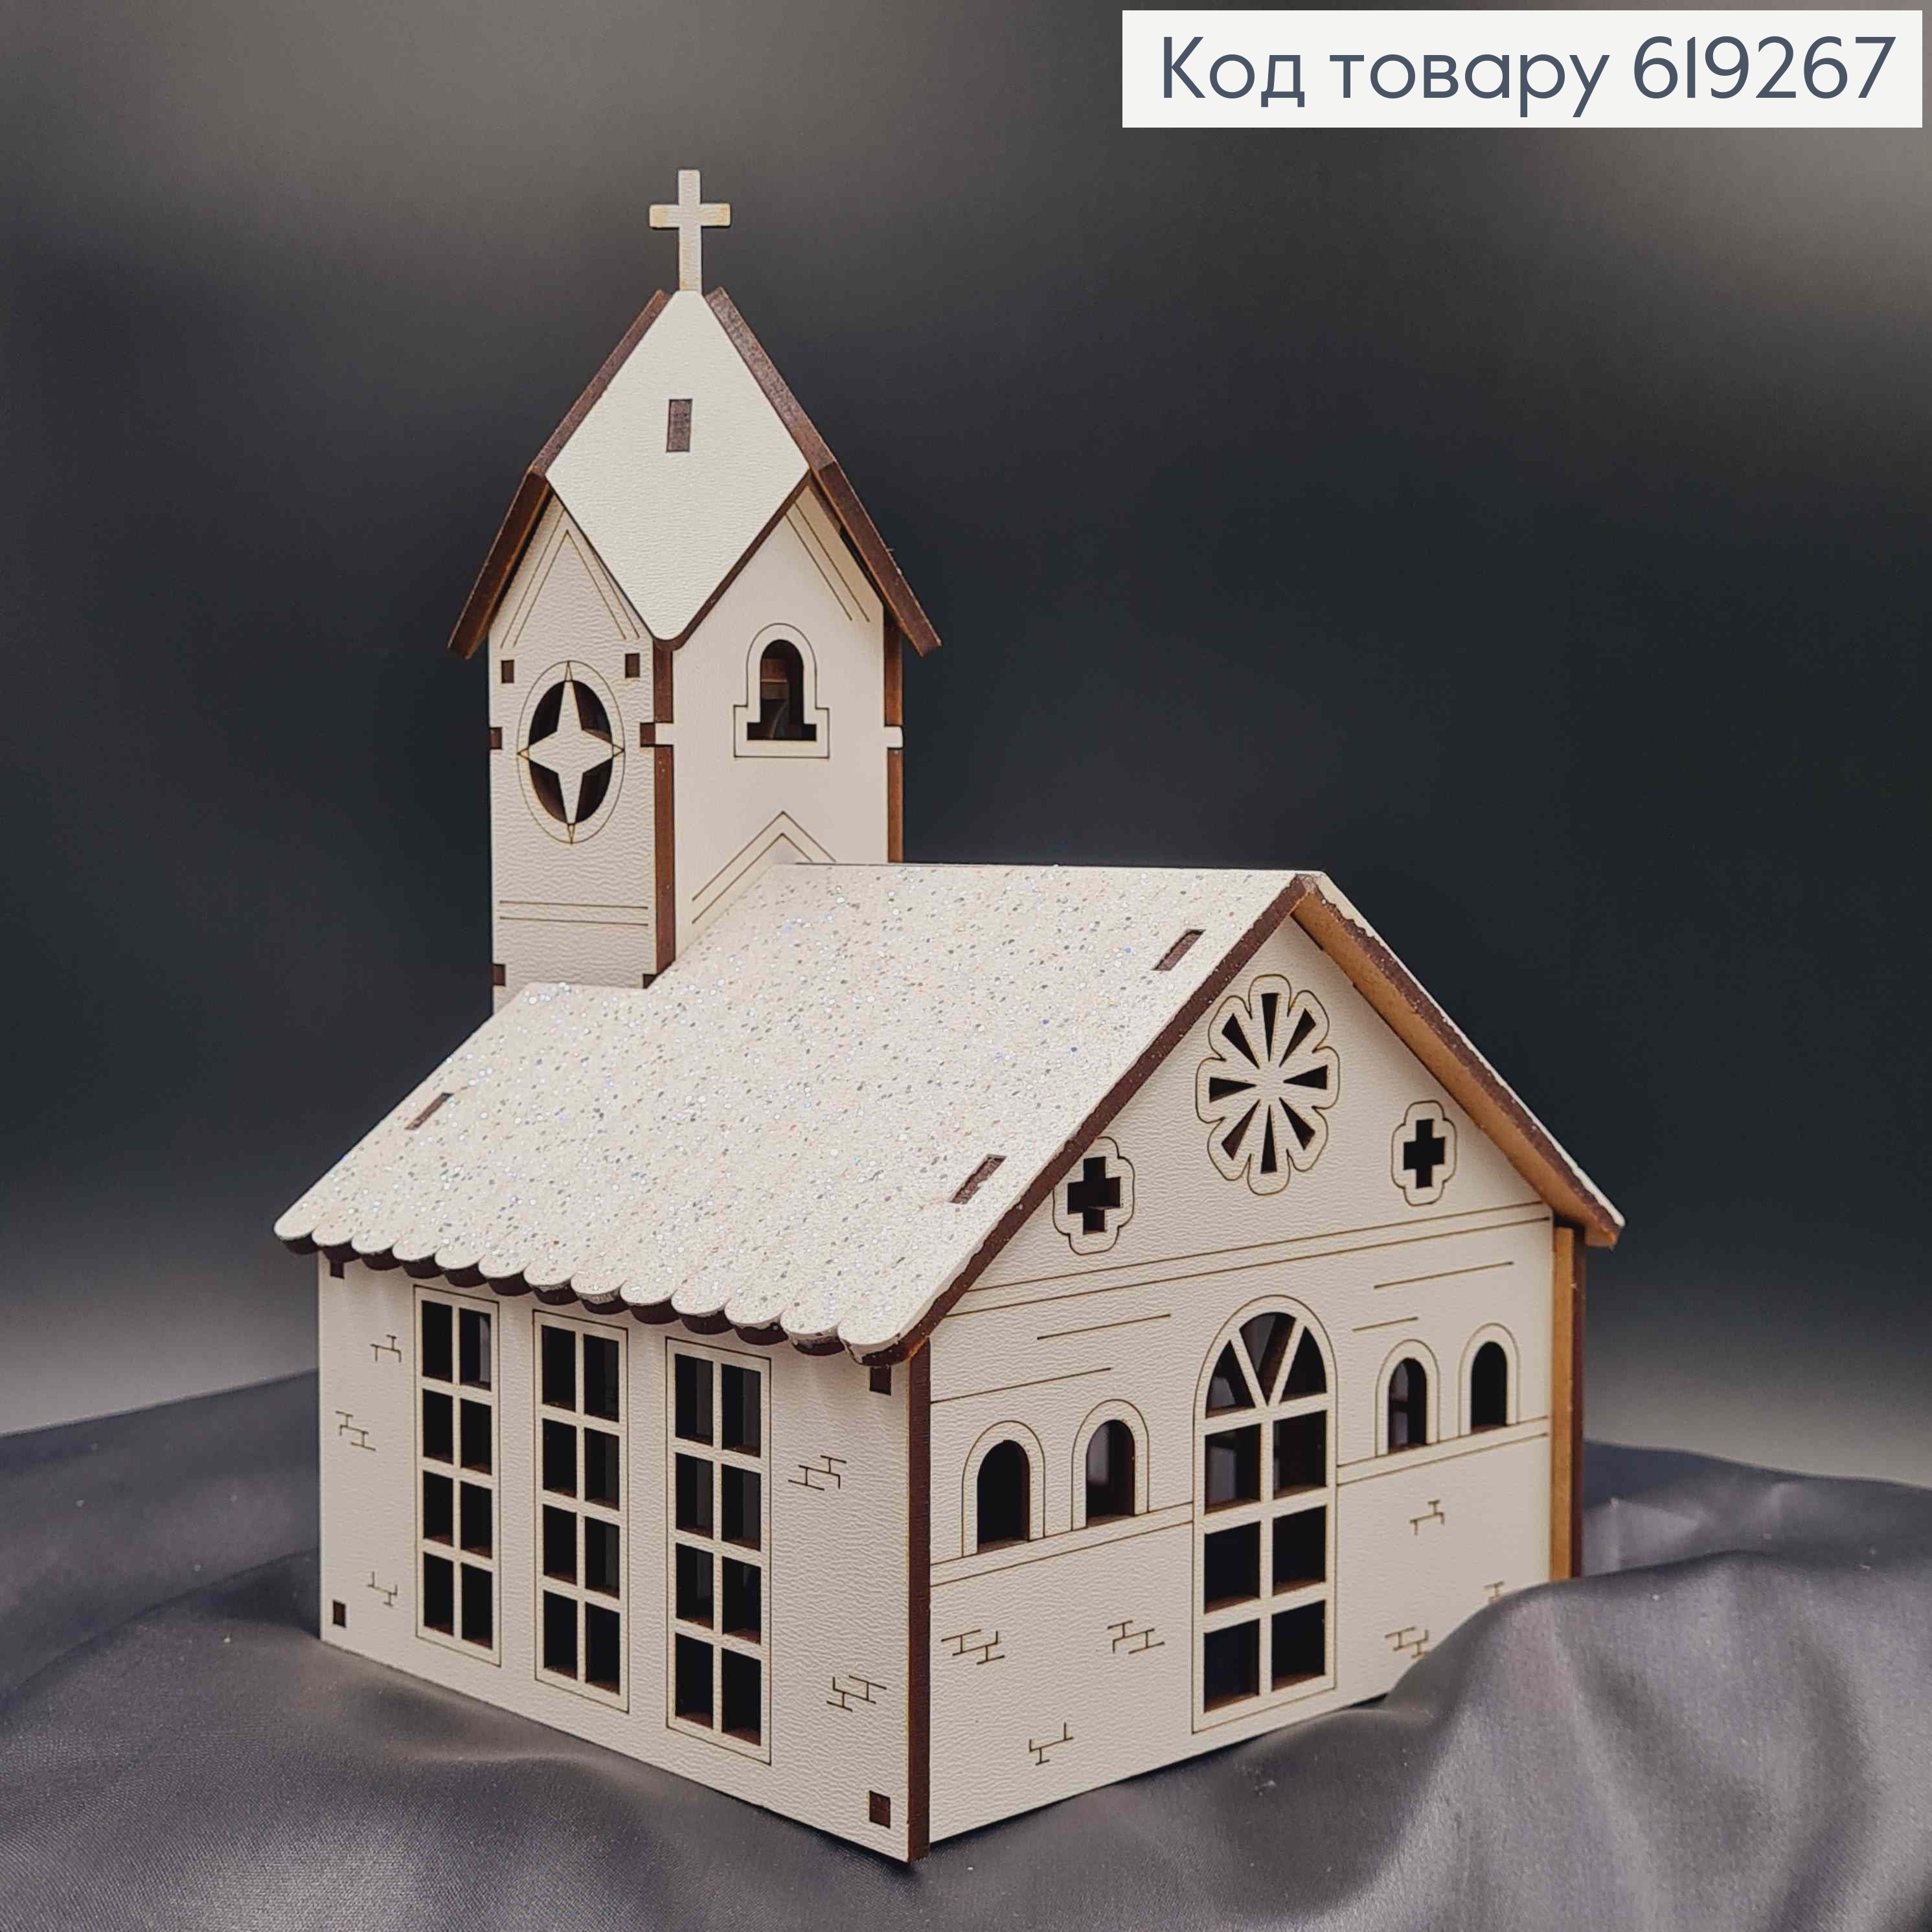 Підсвічник, дерев'яна біла Церква, з хрестиками, 19,5*13*13,5см, Україна 619267 фото 2